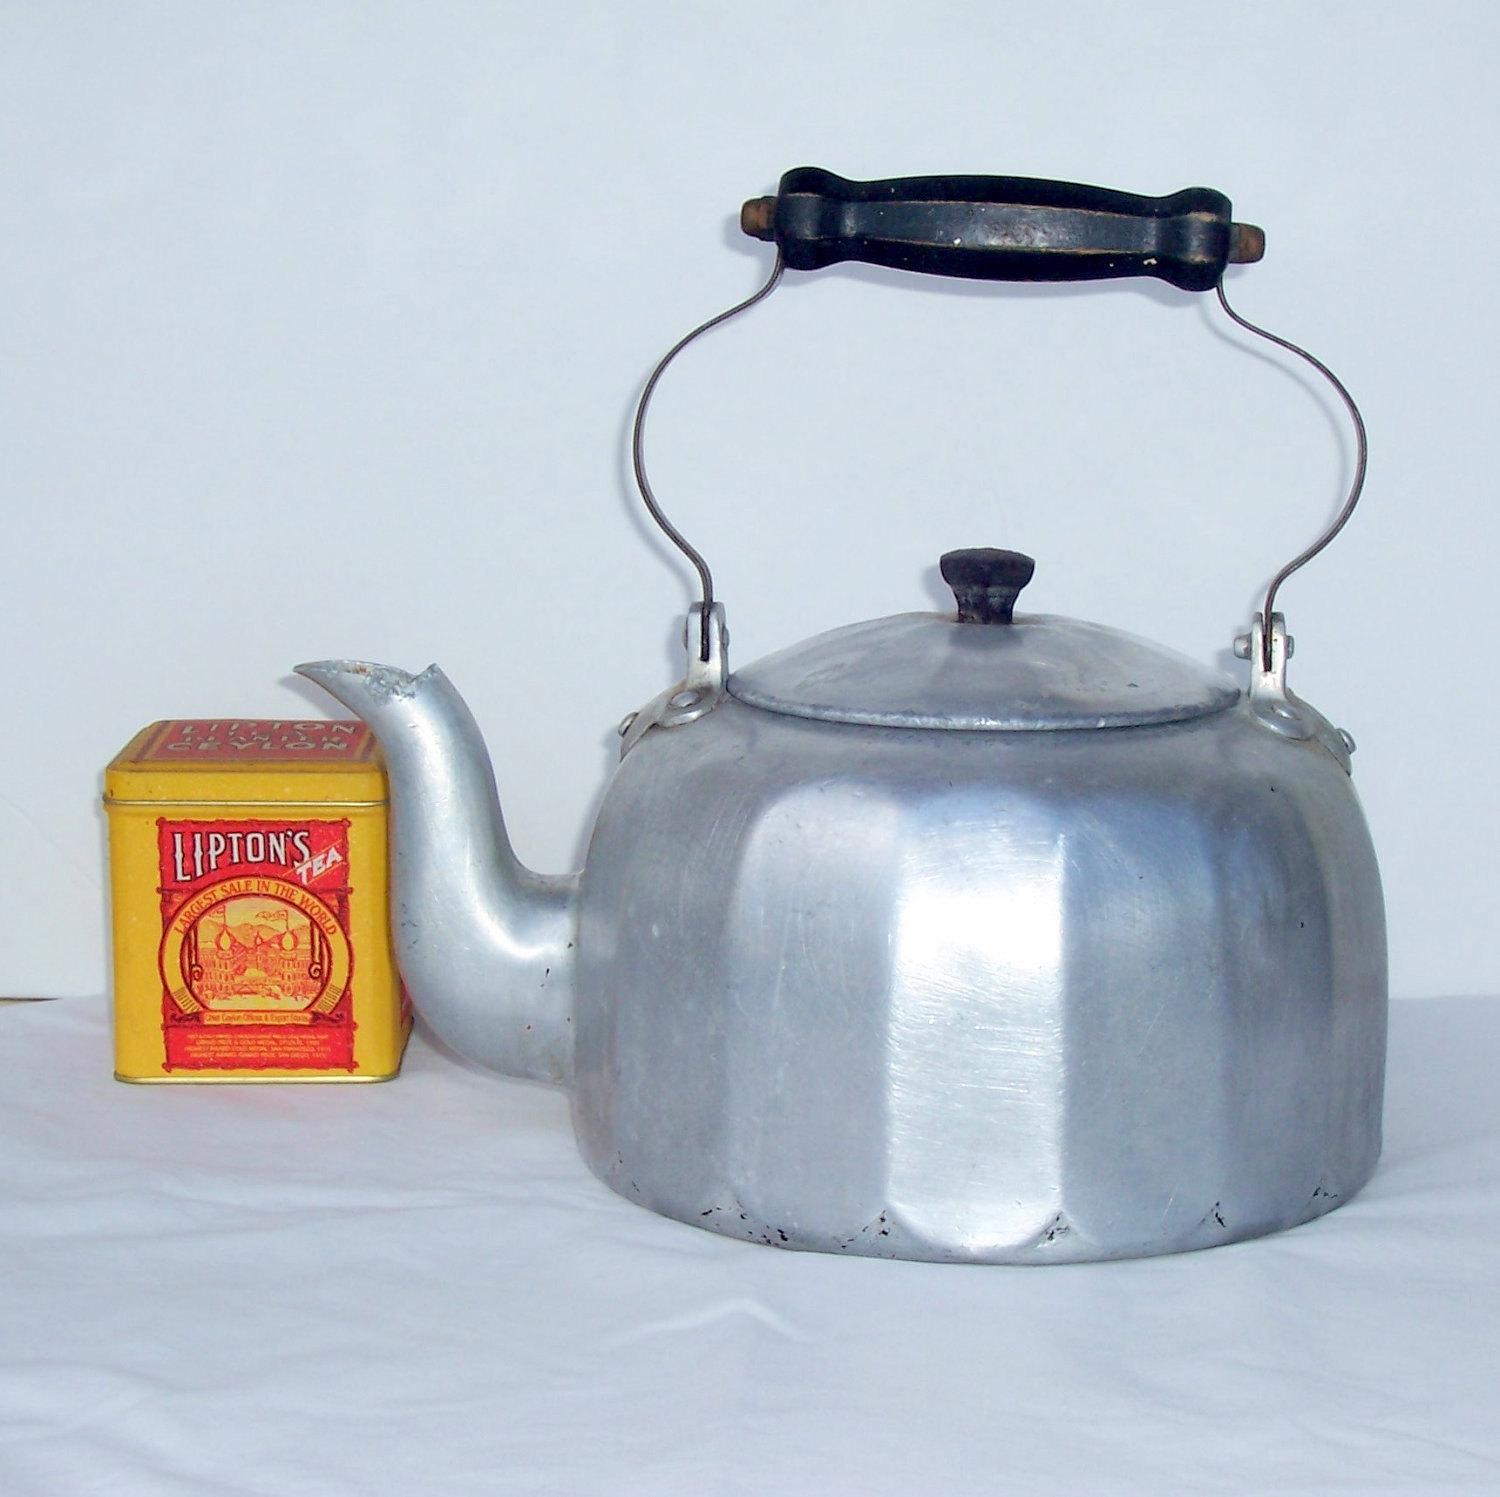 Mirro aluminum tea kettle vintage tea